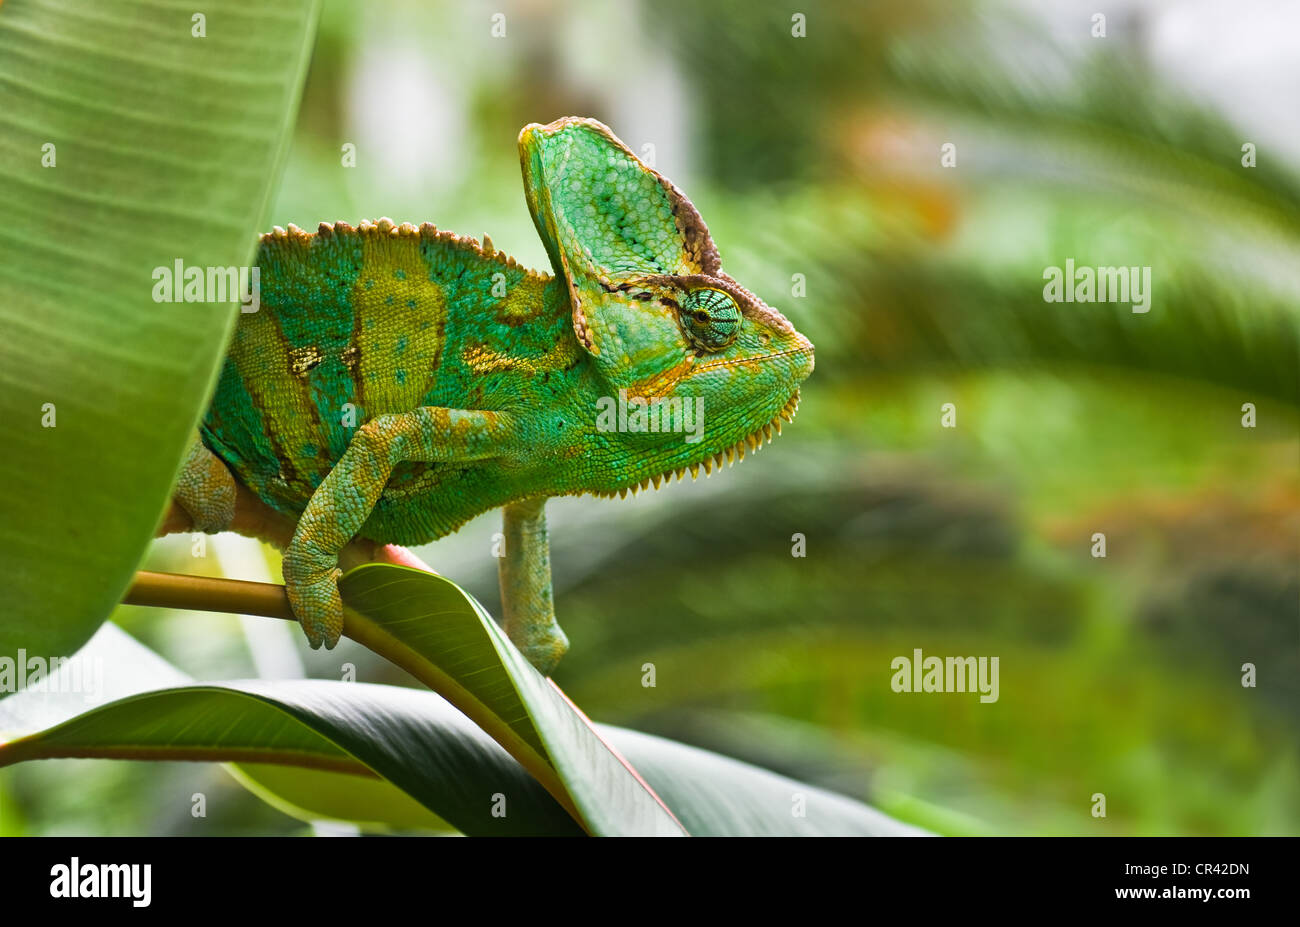 Jemenchameleon Chamaelio calyptratus vert ou escalade un arbre Banque D'Images